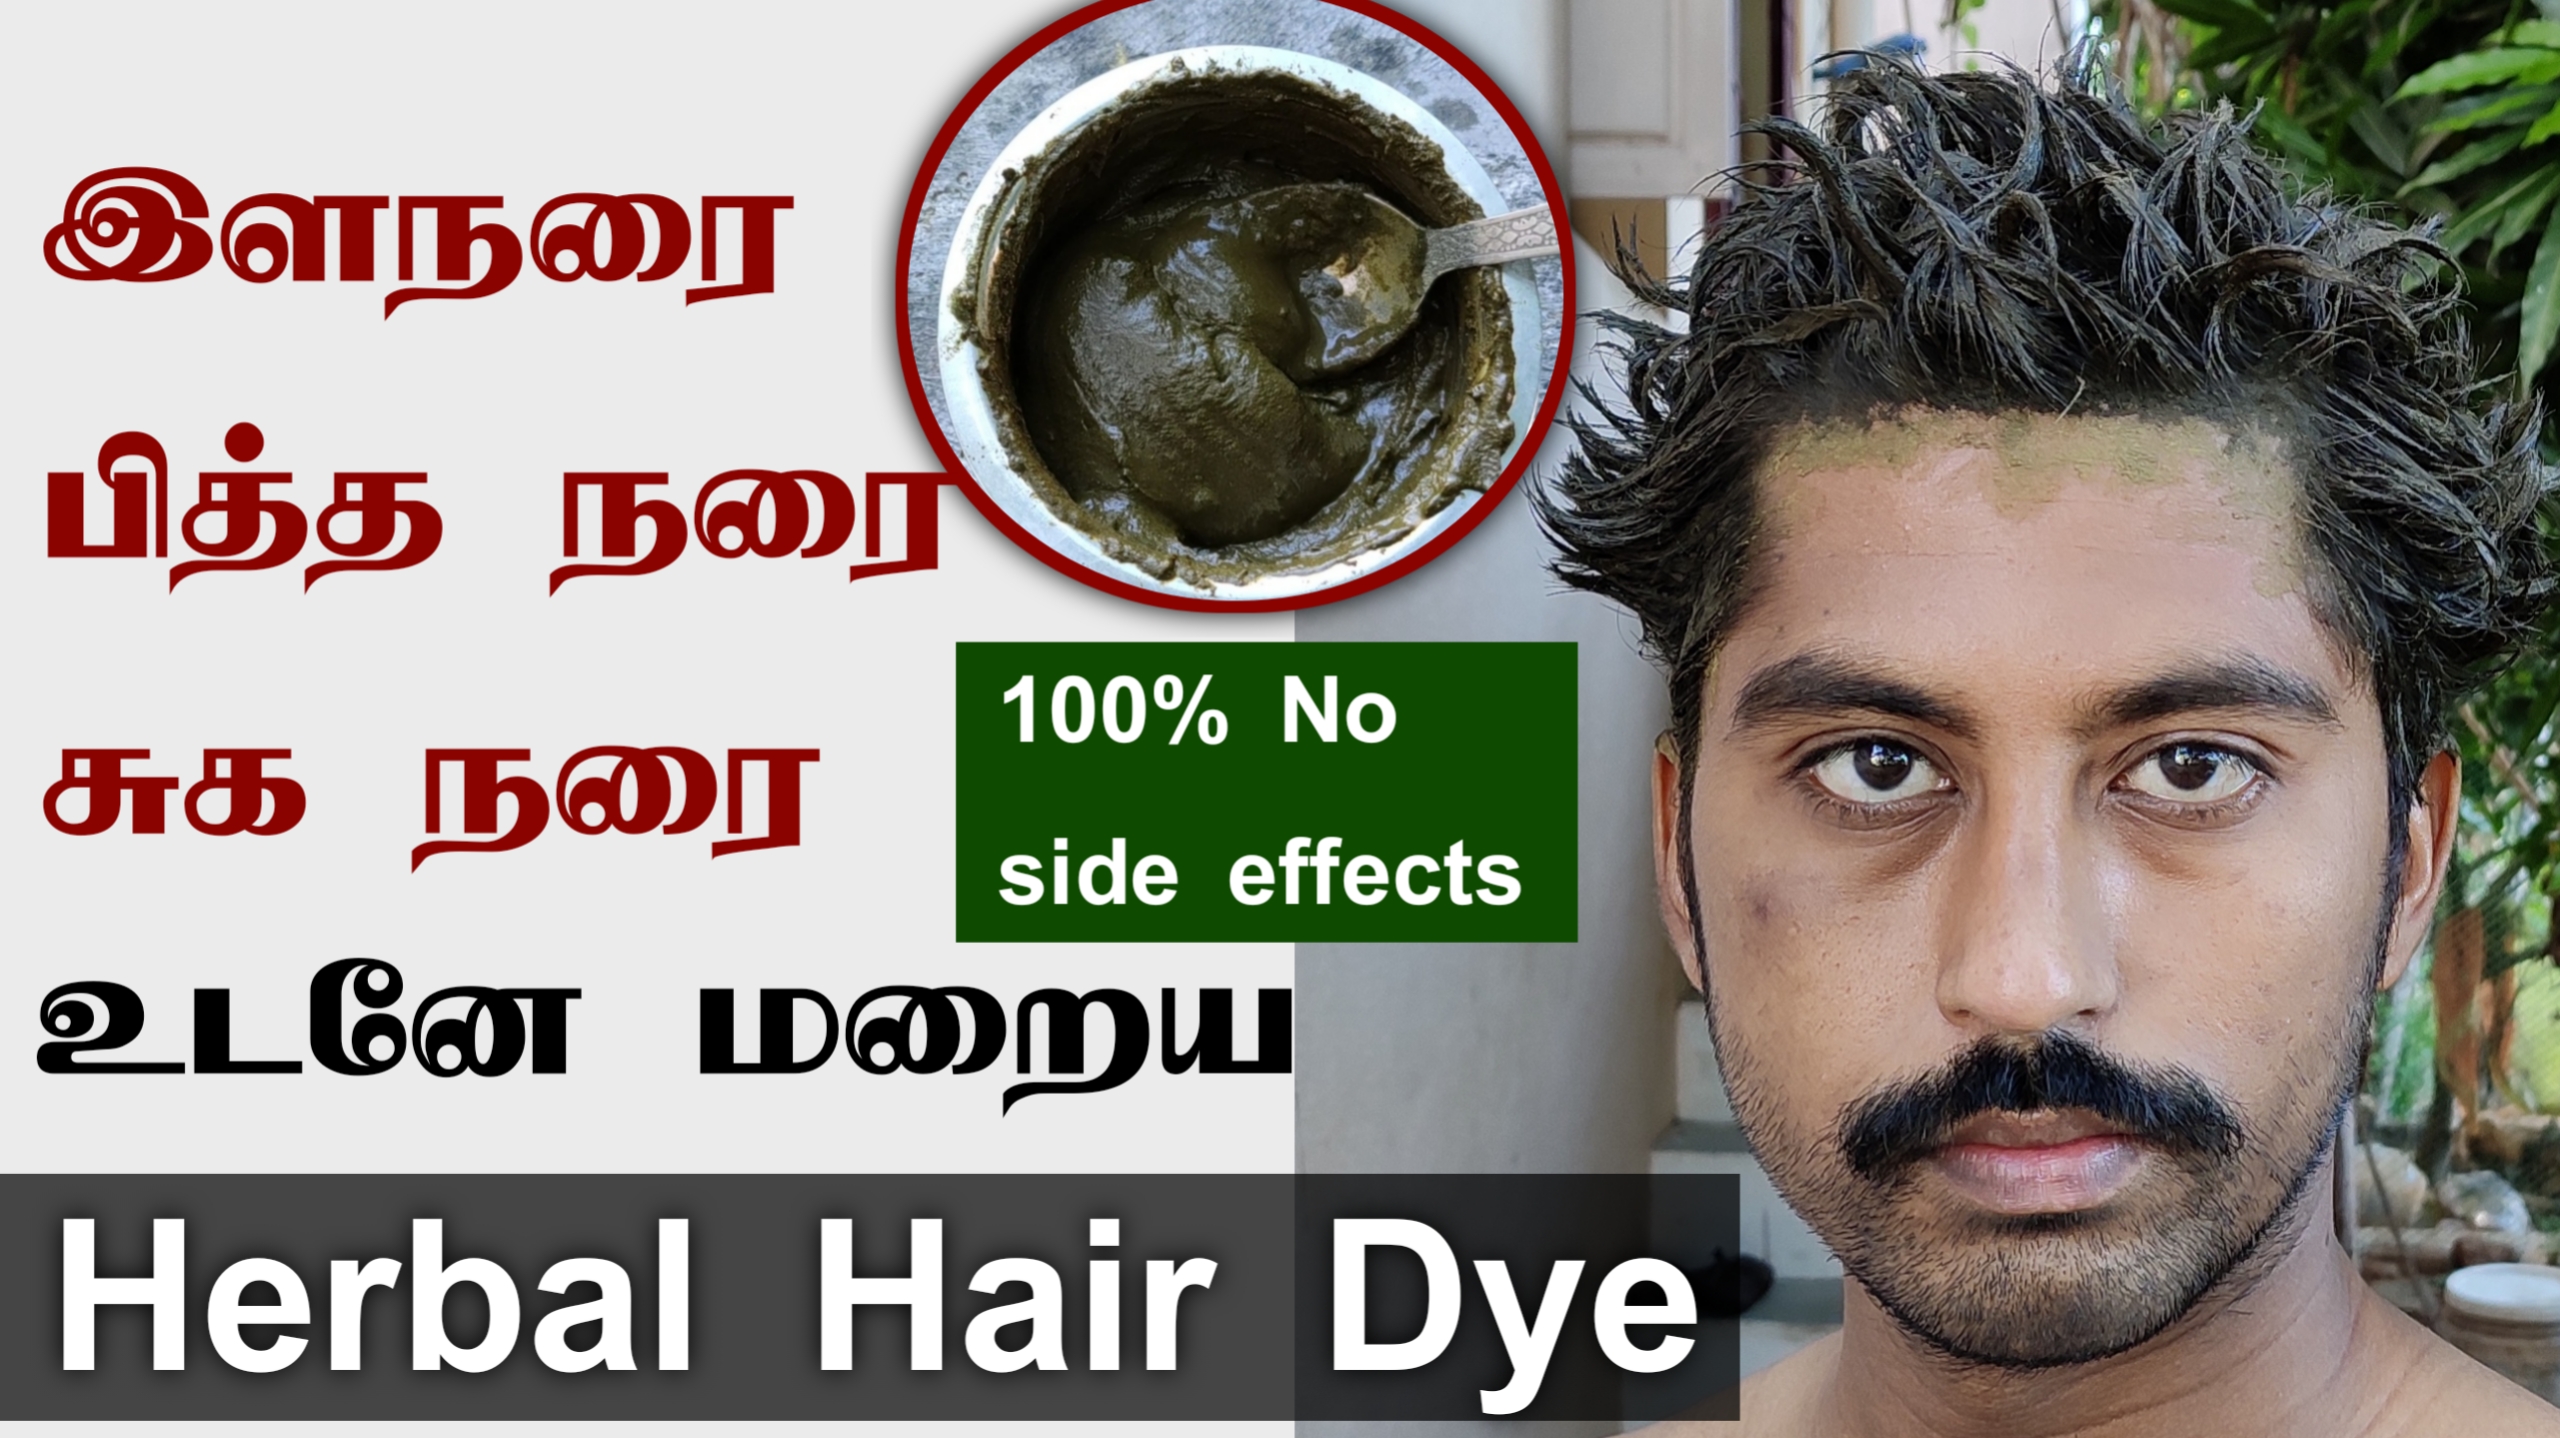 நரை முடி கருப்பாக | Naturally turn grey hair to black with “Herbal Hair Dye” | 100% no side effects